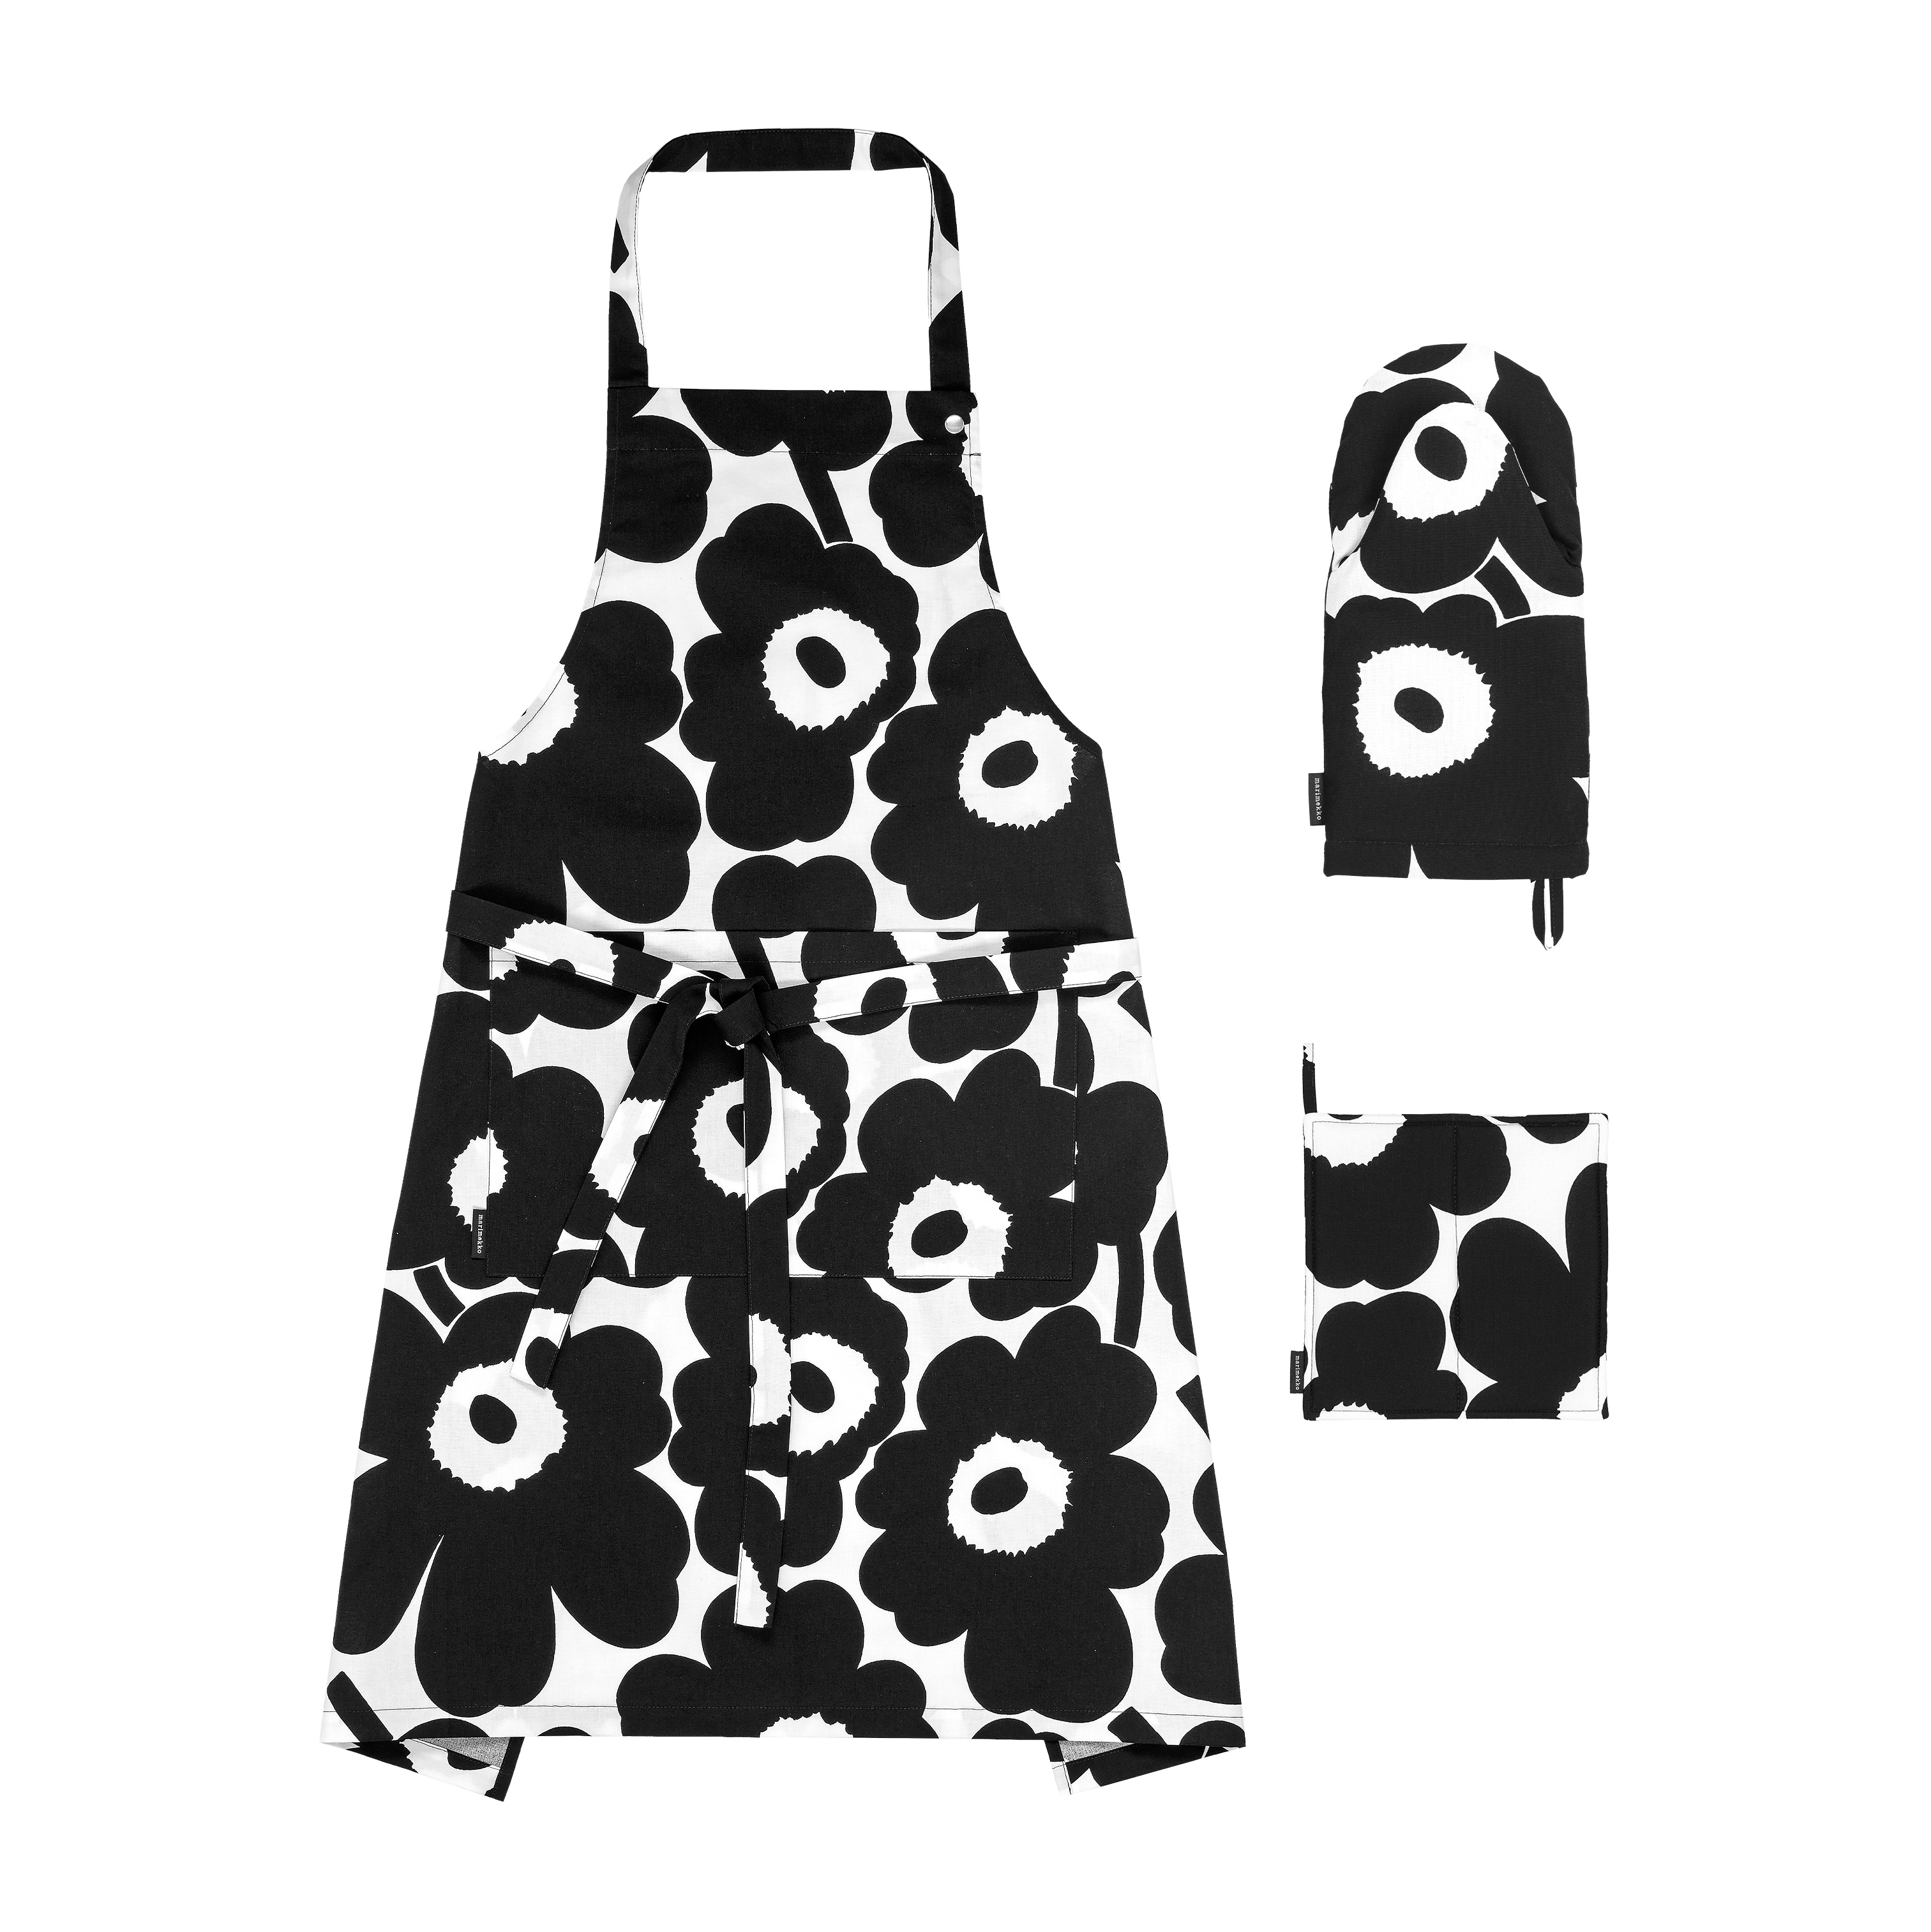 Pieni Unikko kitchen textiles set from Marimekko 